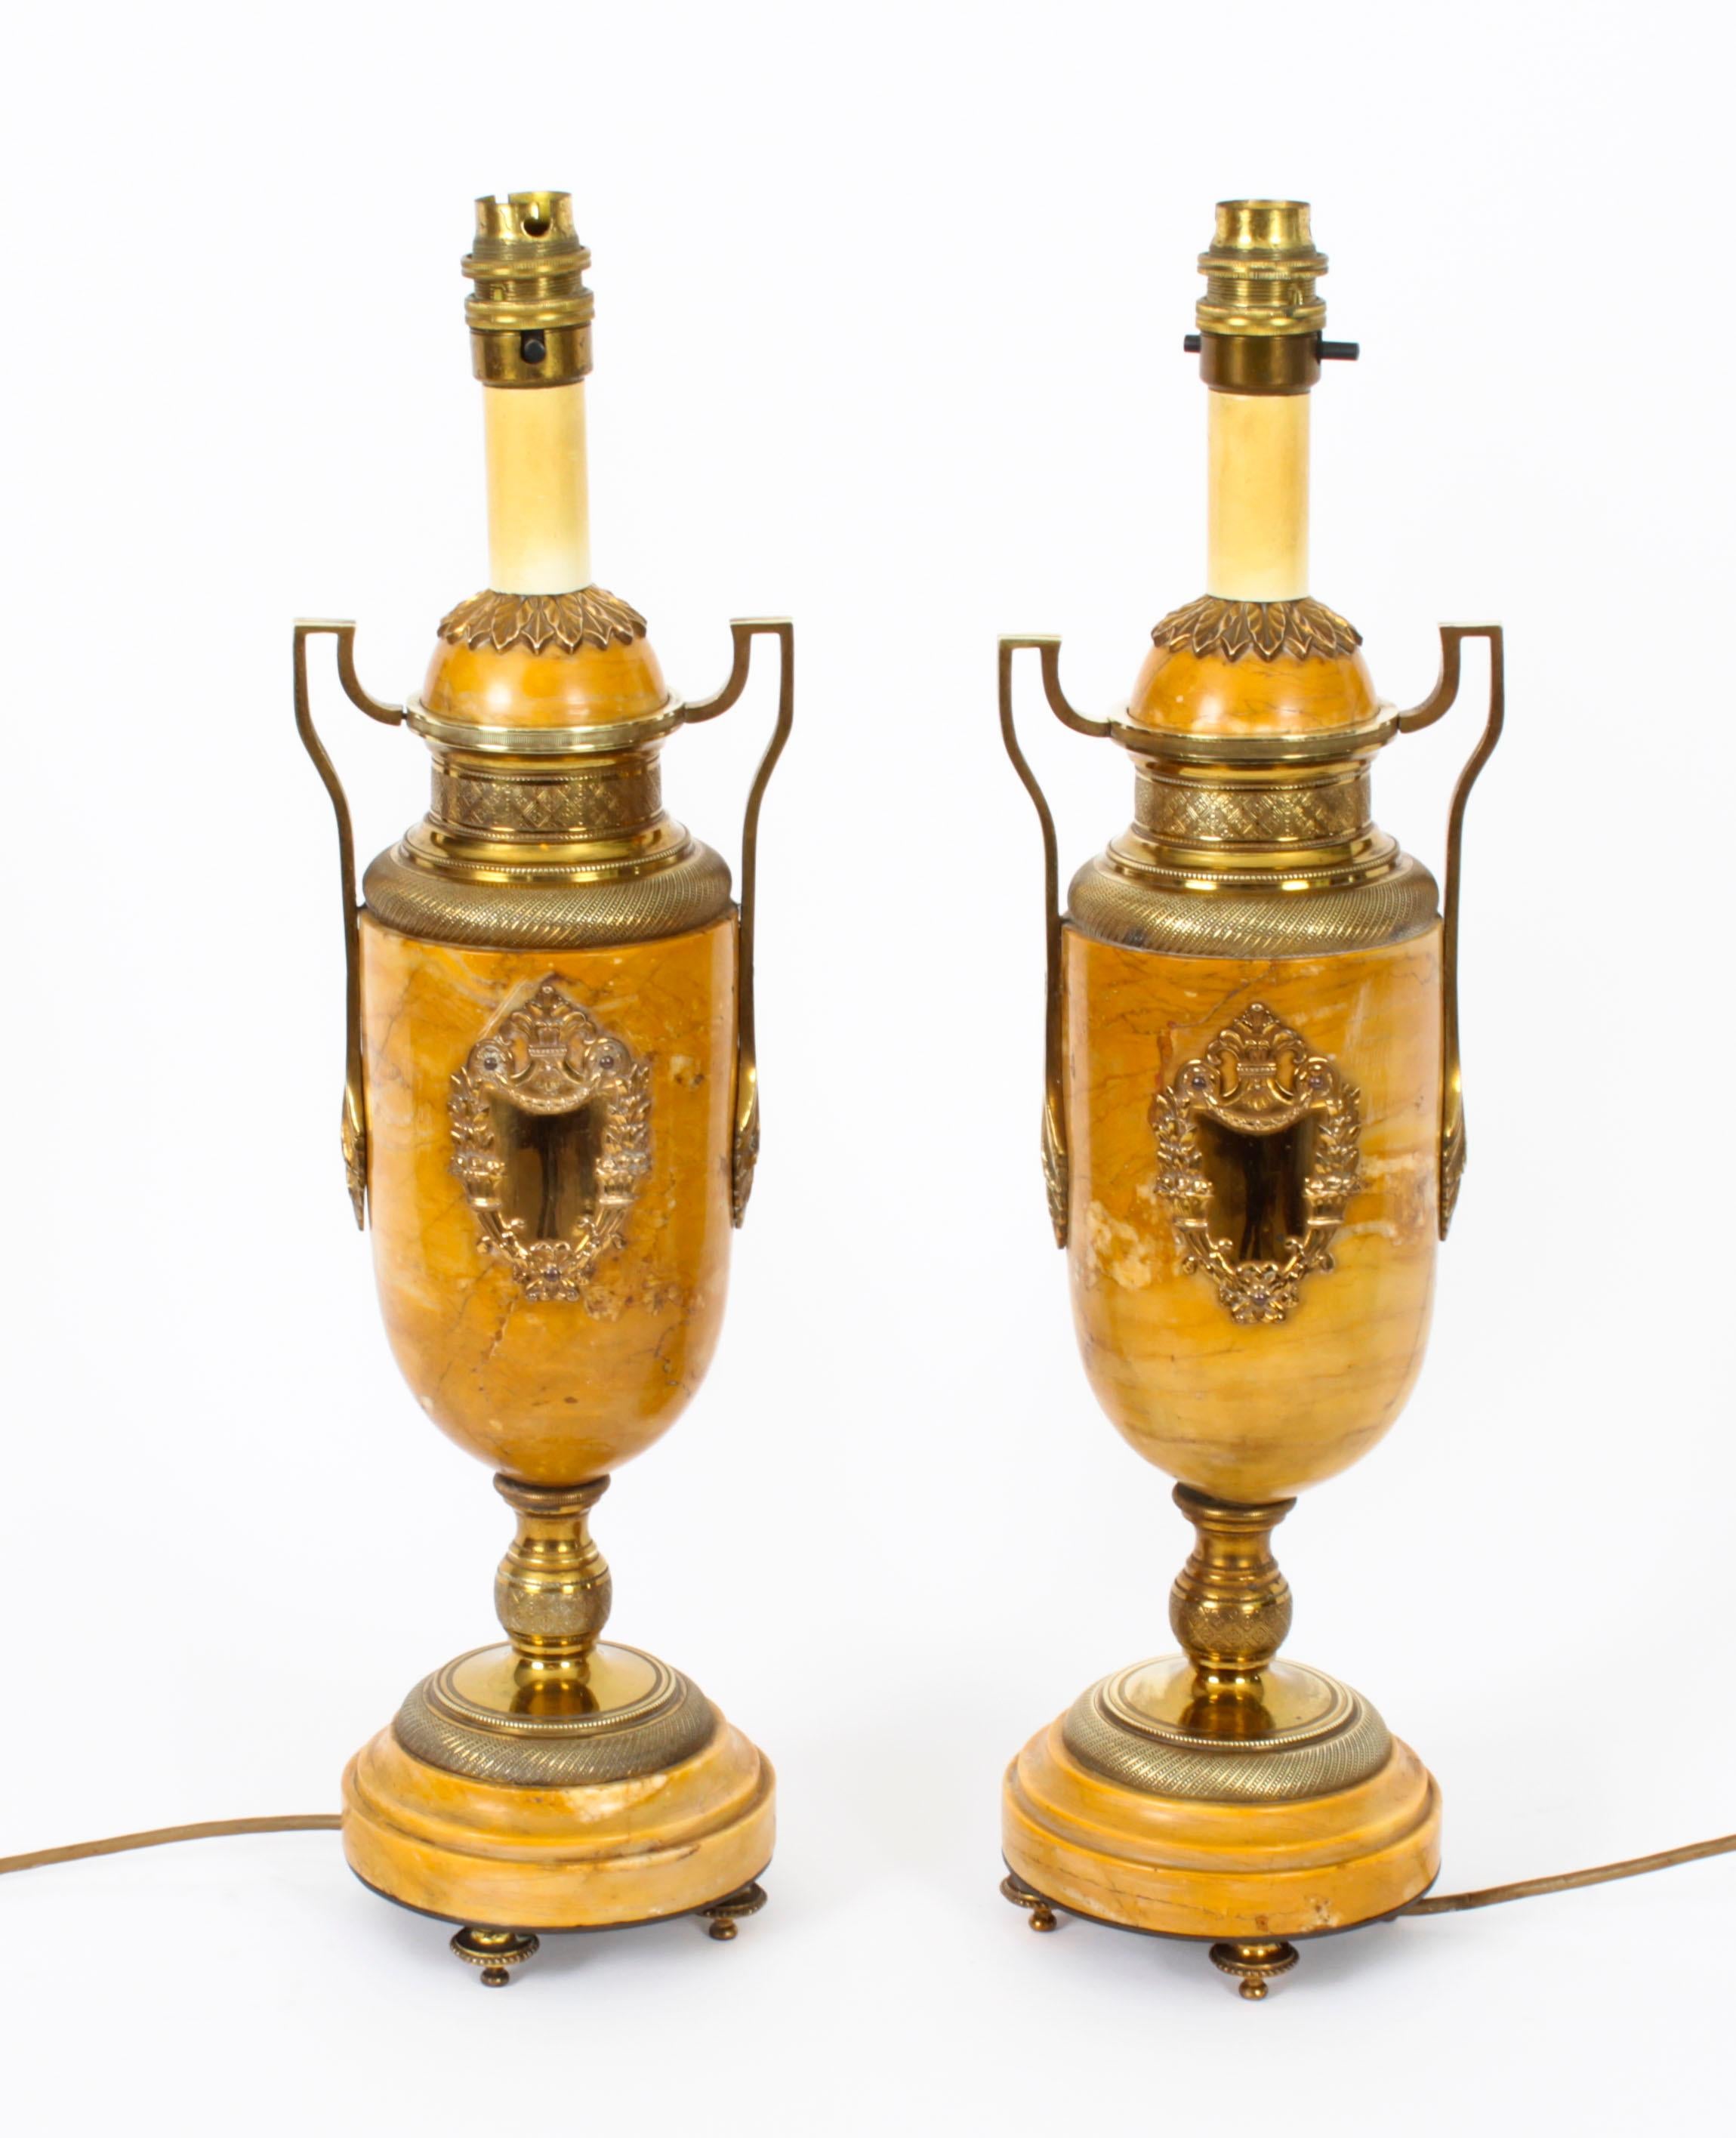 Ancienne paire de lampes de table néoclassiques en bronze doré et en marbre Giallo di Siena, datant d'environ 1870.
 
La paire est de forme balustre avec deux poignées en bronze doré et des cartouches en bronze doré, reposant sur des socles